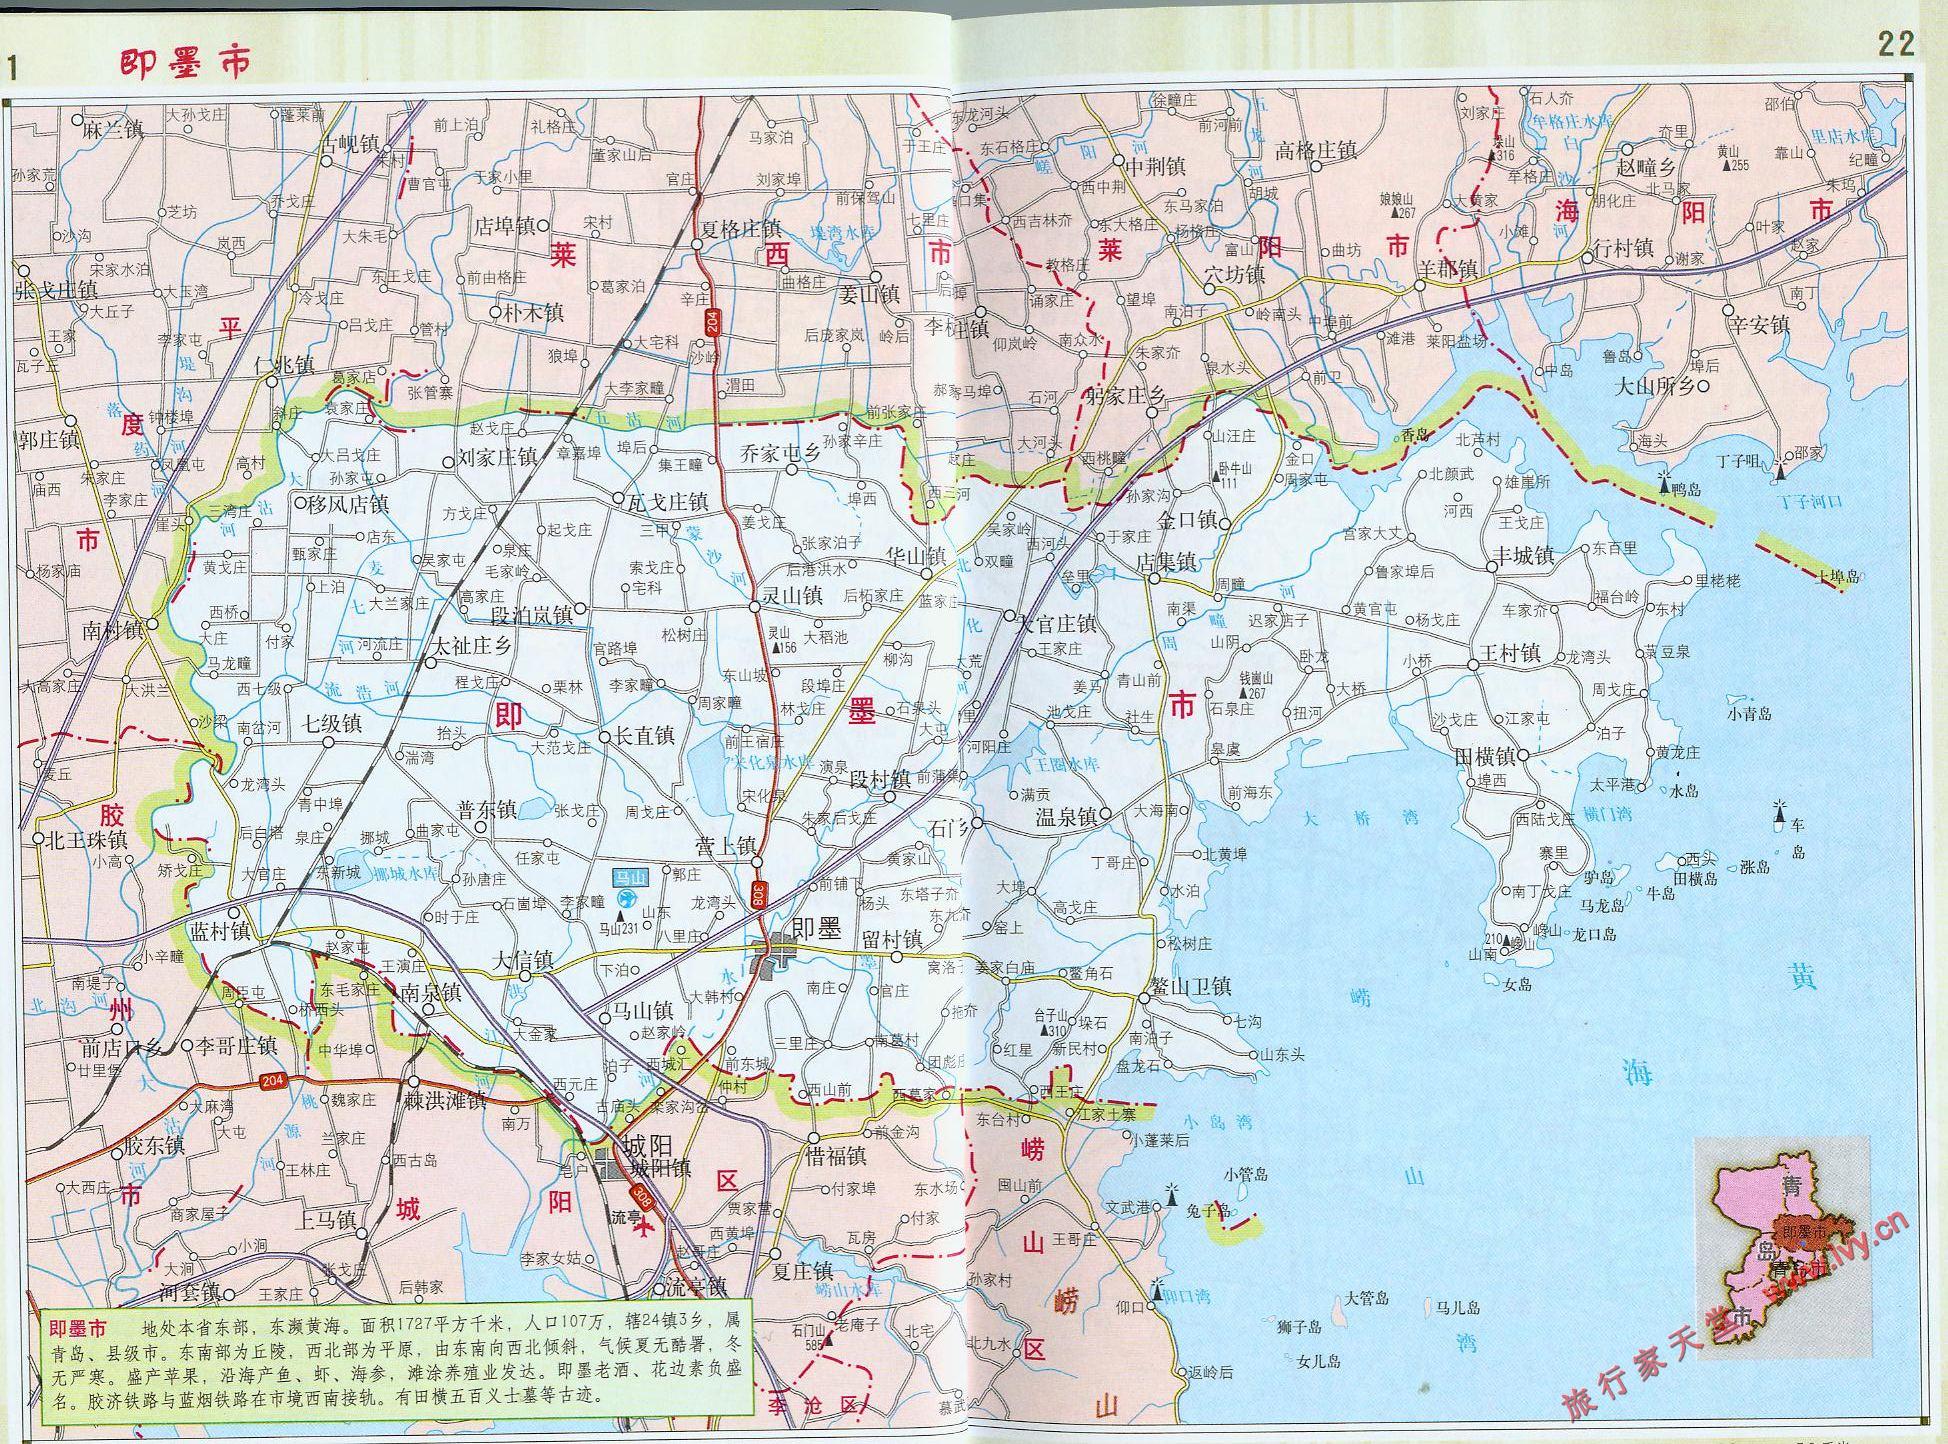 地图窝 中国 山东 青岛  (长按地图可以放大,保存,分享)